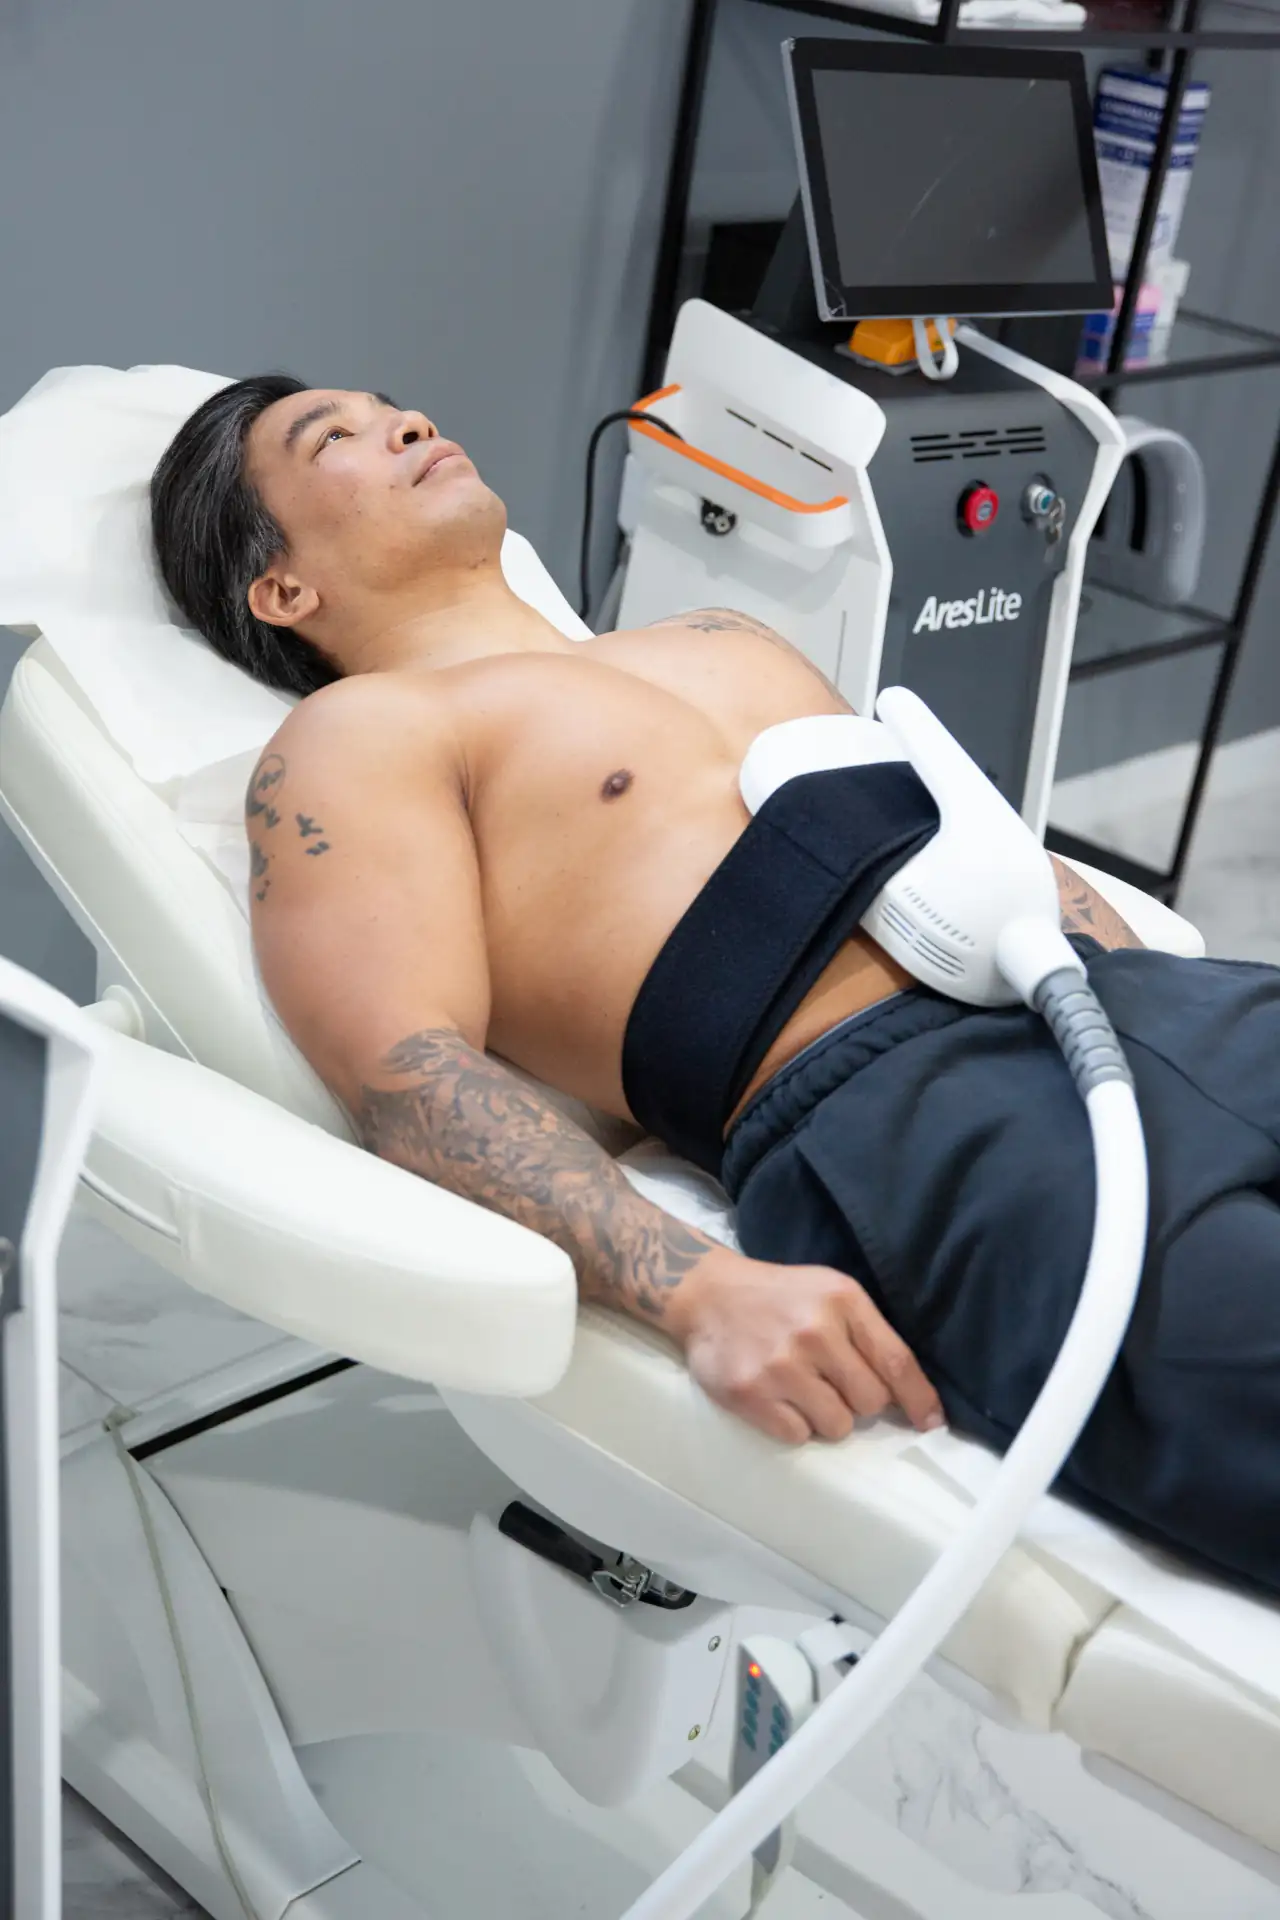 une image montrant un client allongé en train de pratiqué une sceance d'electrostimulation dans la clinique niptuck